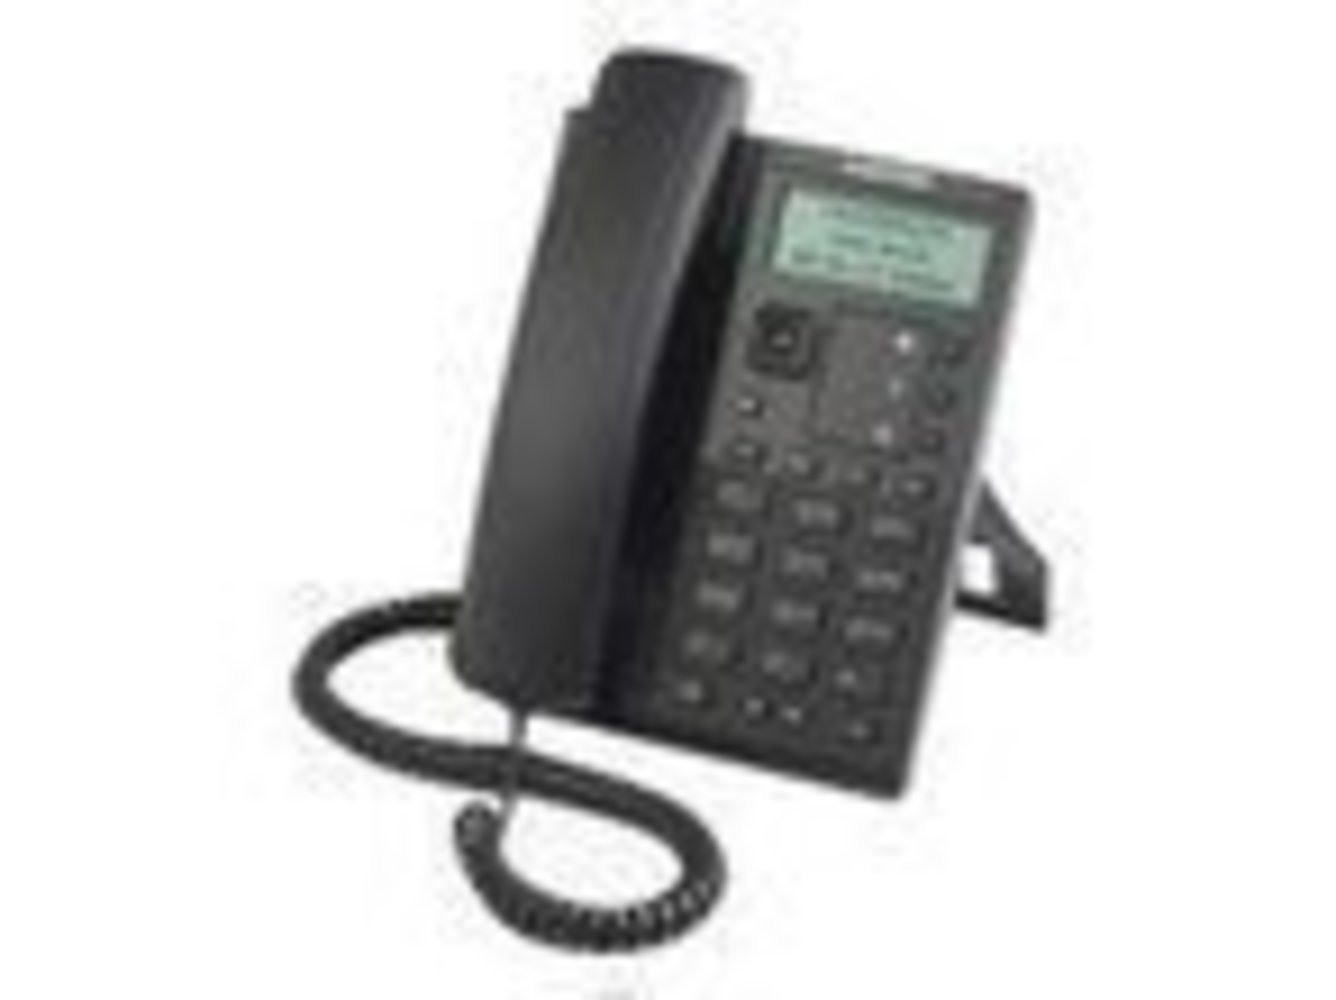 MITEL 6863i VoIP SIP Telefon ohne Netzteil 87-00012AAA-A - Hochwertiges VoIP Telefon für klare Kommunikation